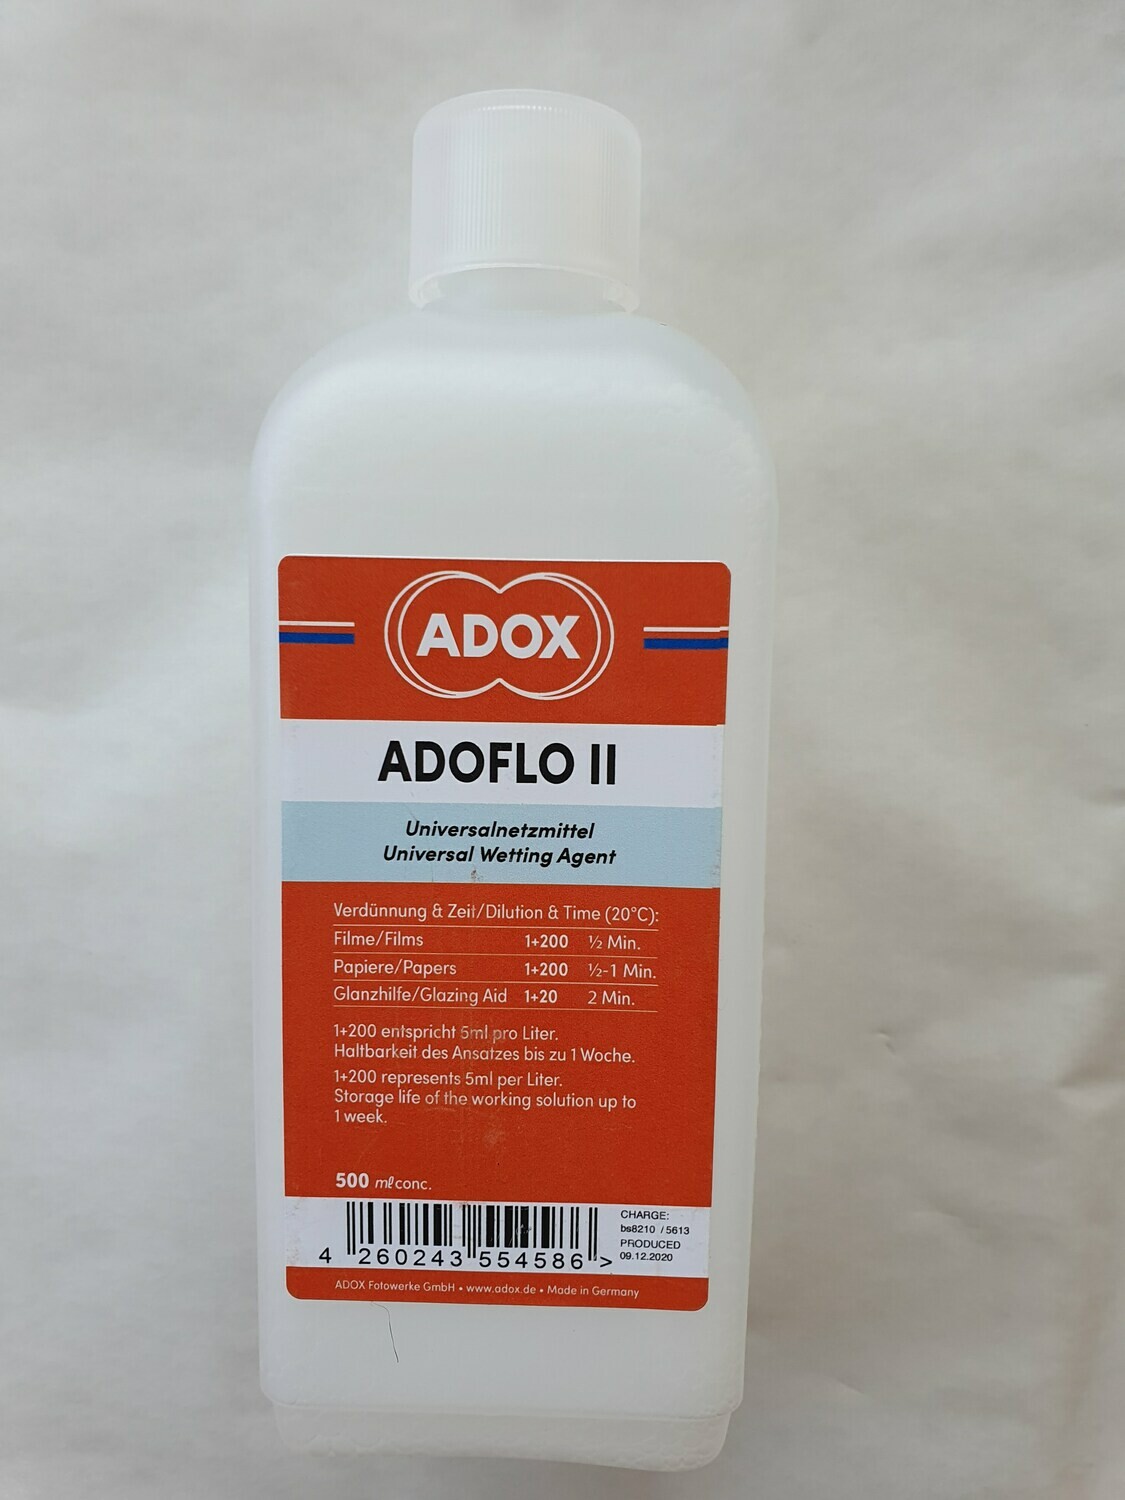 ADOX ADOFLO II Netzmittel 500 ml Konzentrat (Ersatz für Kodak Photo-Flo)